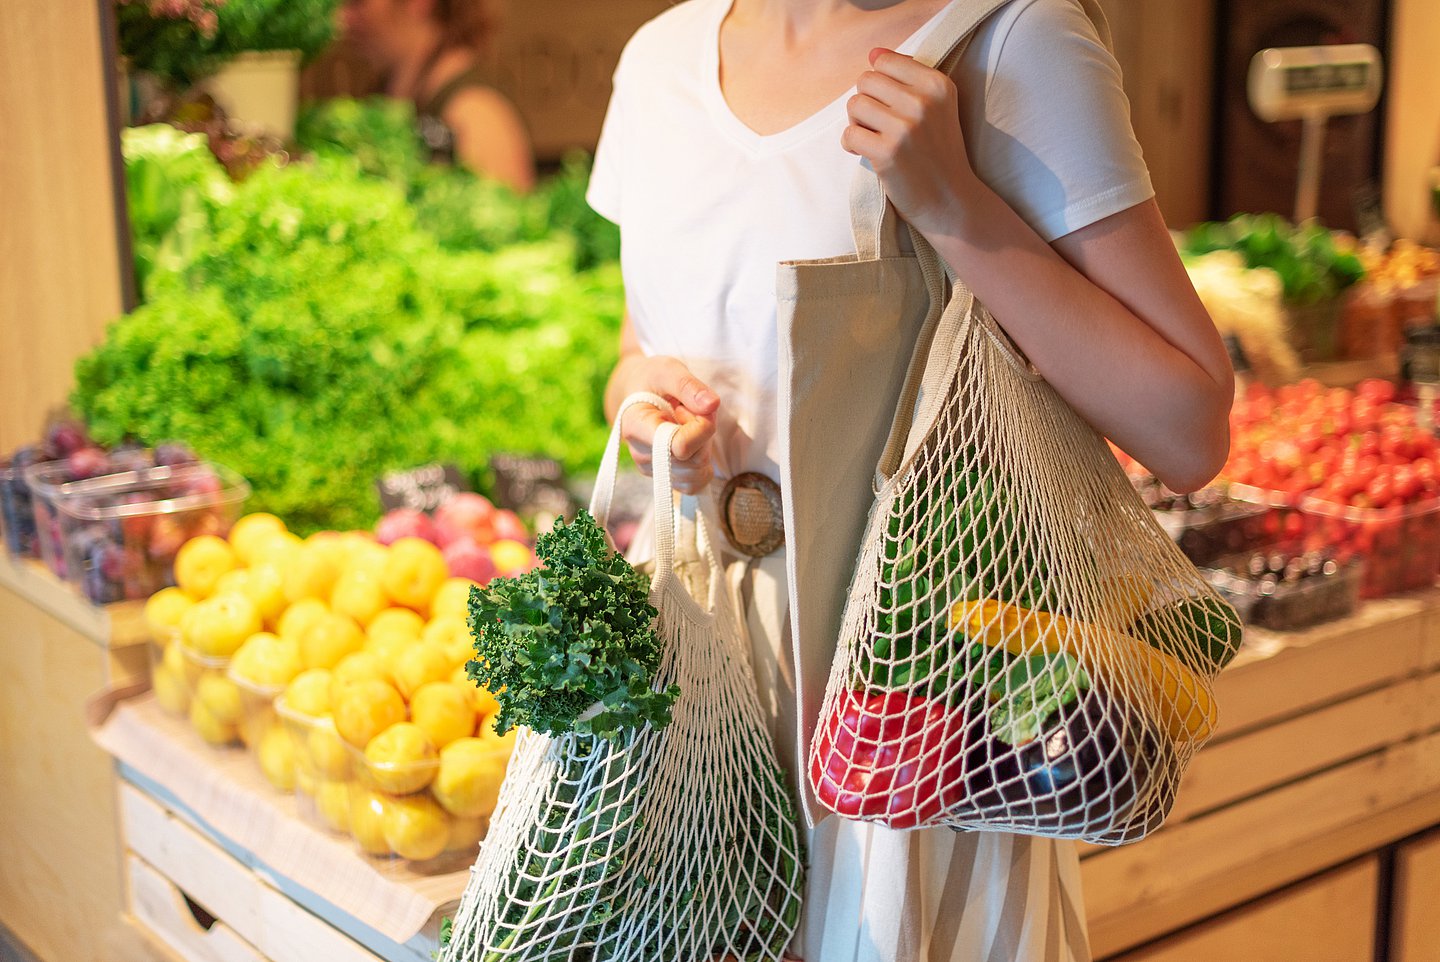 Das Bild zeigt eine Frau beim Einkauf von Obst und Gemüse.